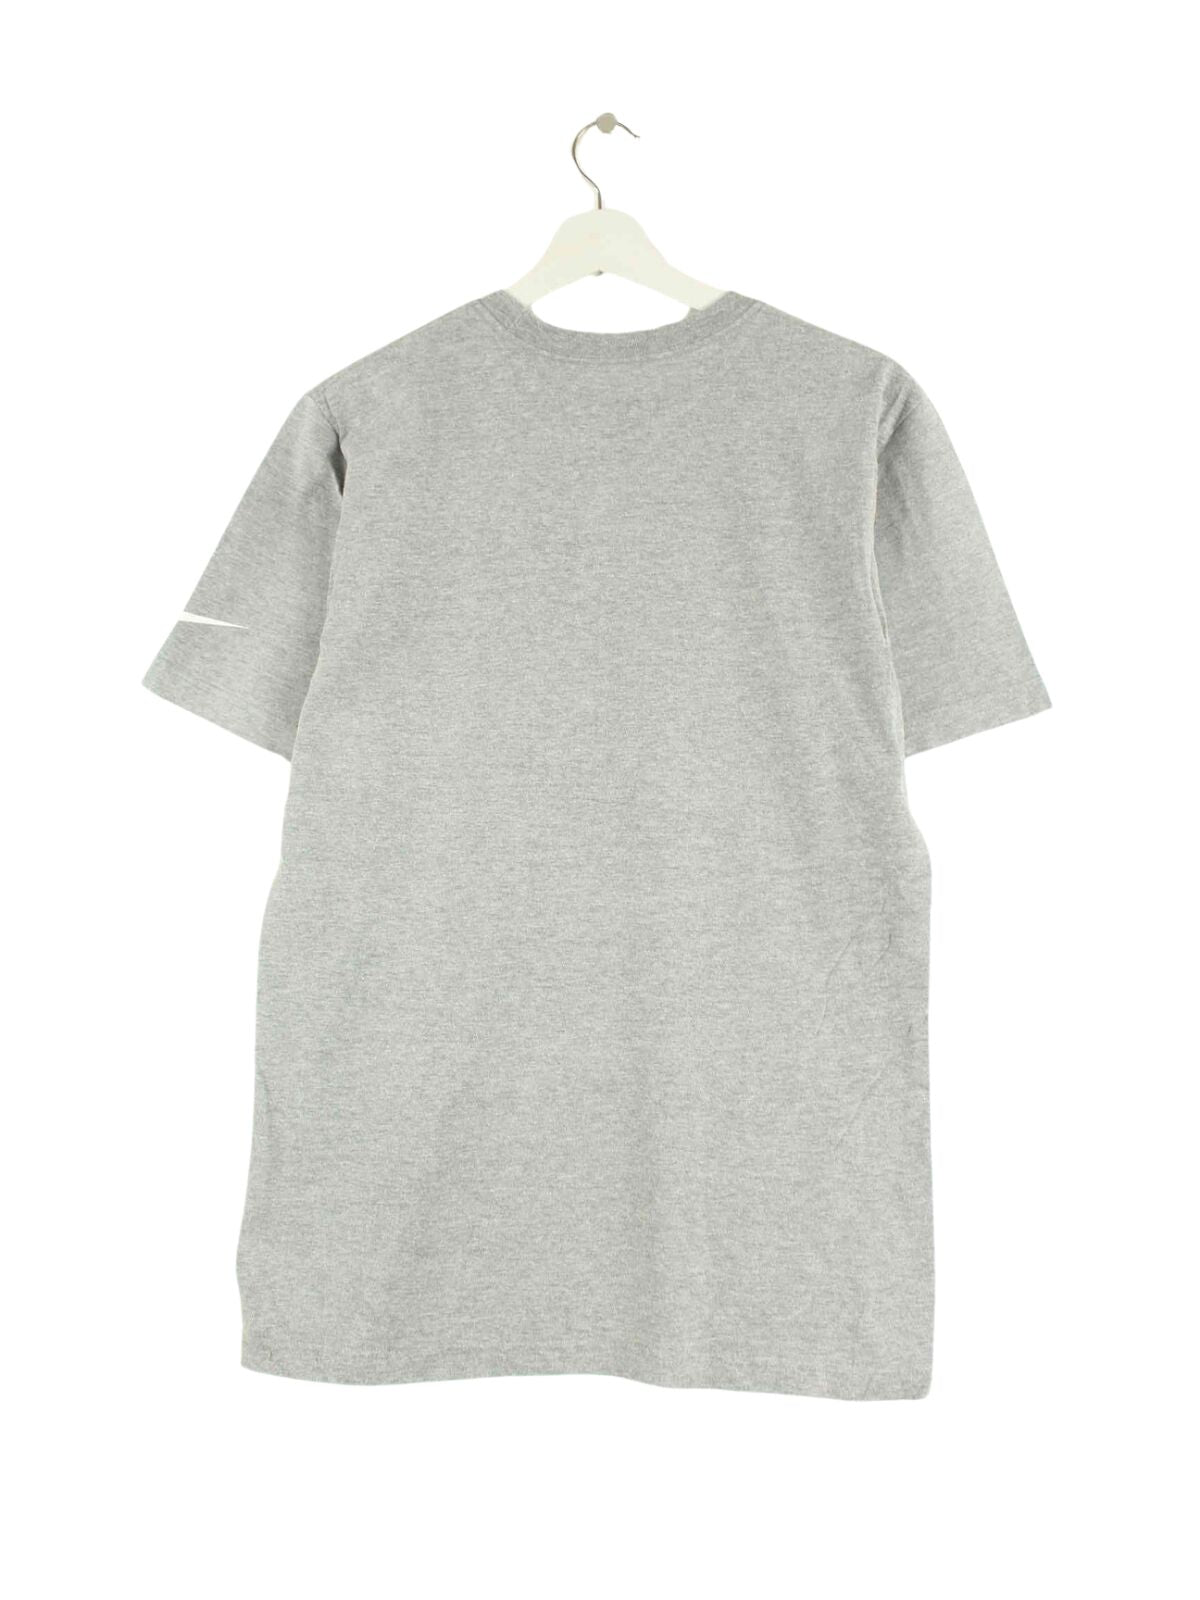 Nike Redskins Print T-Shirt Grau M (back image)